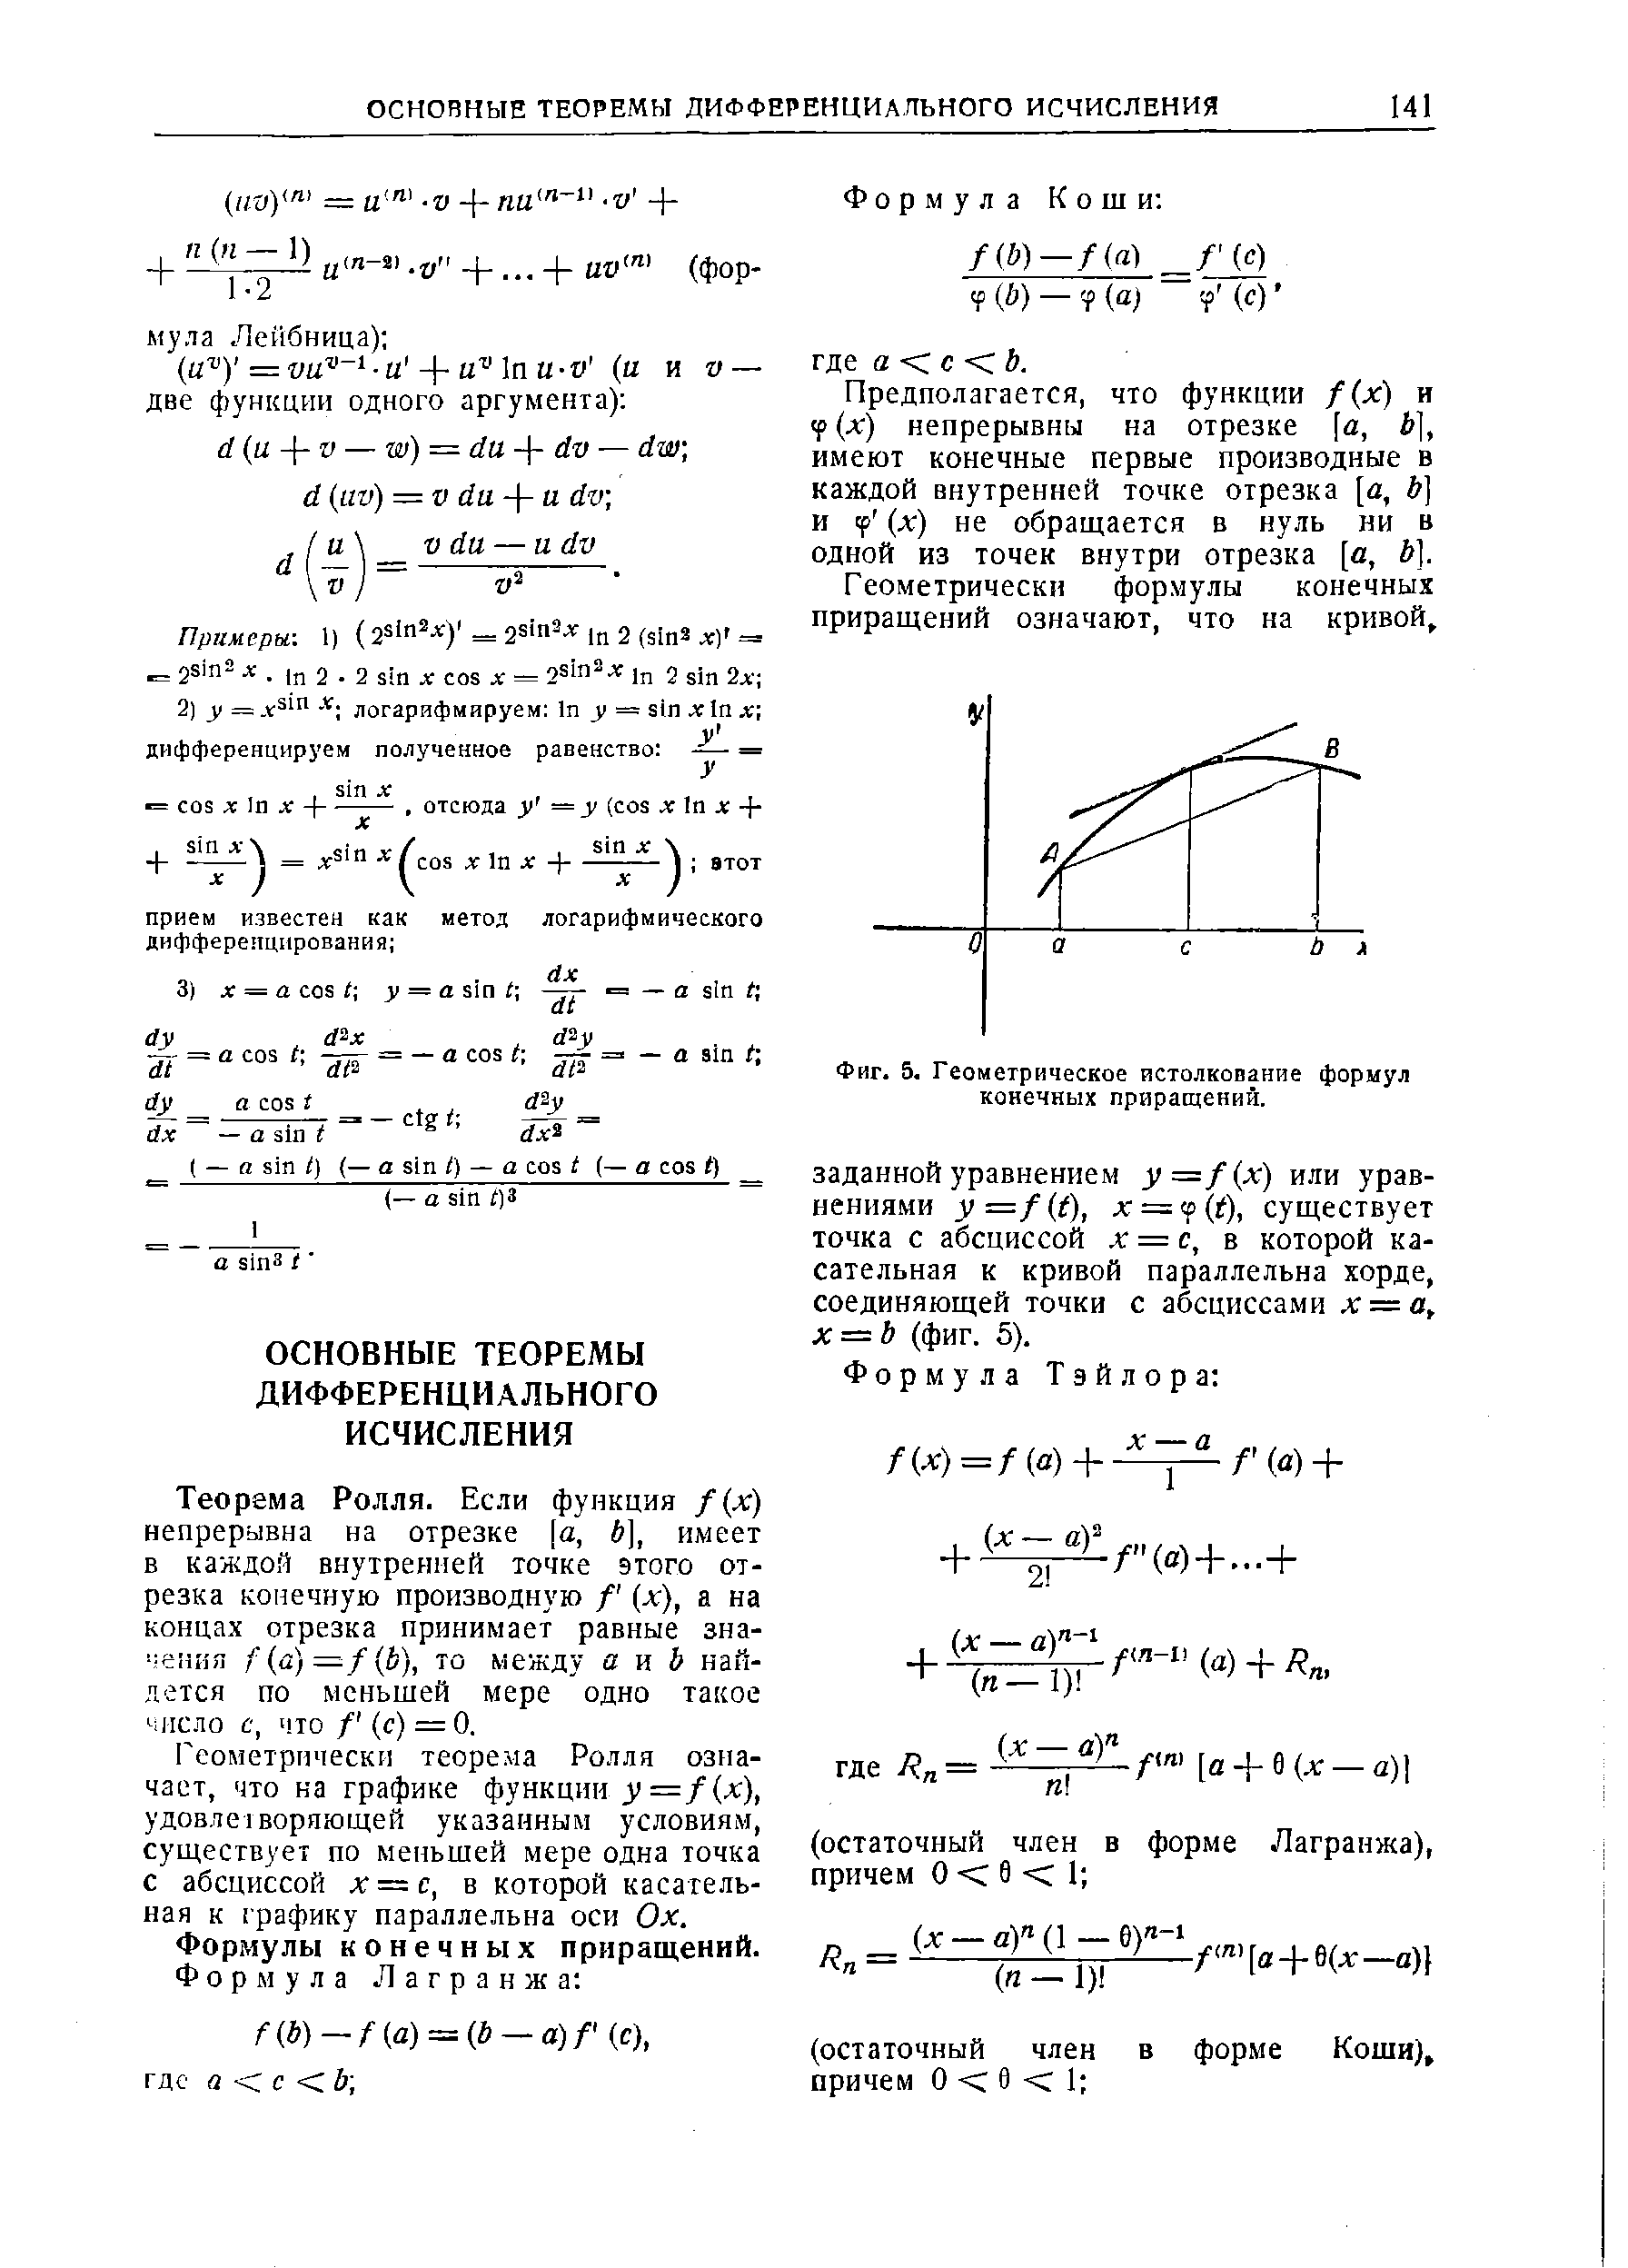 Фиг. 5, Геометрическое истолкование формул конечных приращений.
